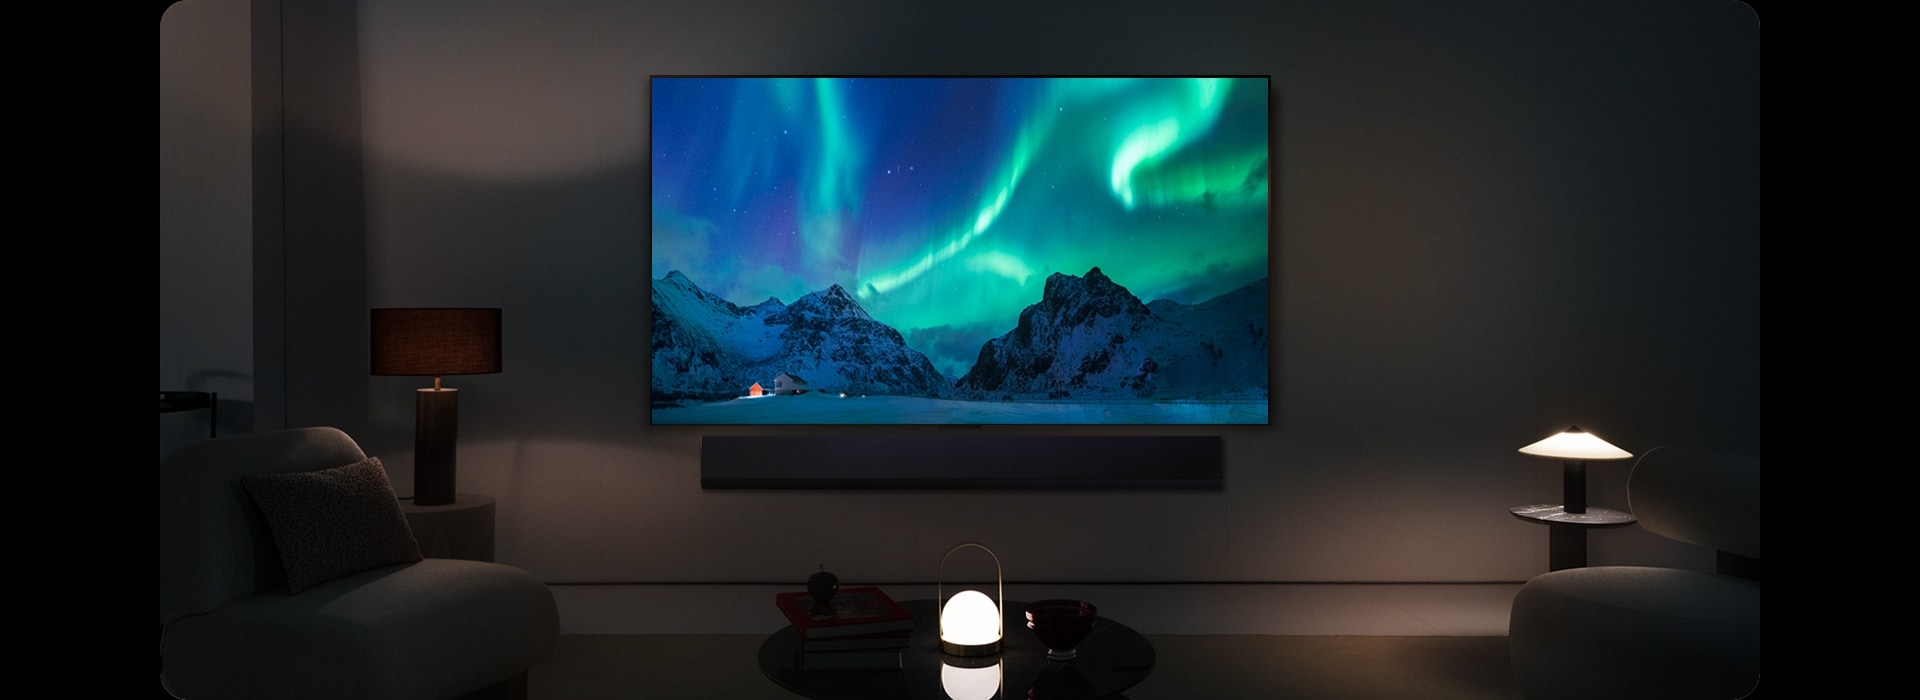 Телевизор LG OLED TV и саудбар LG в современном жилом пространстве в дневное время. Изображение северного сияния на экране отображается с идеальным уровнем яркости.